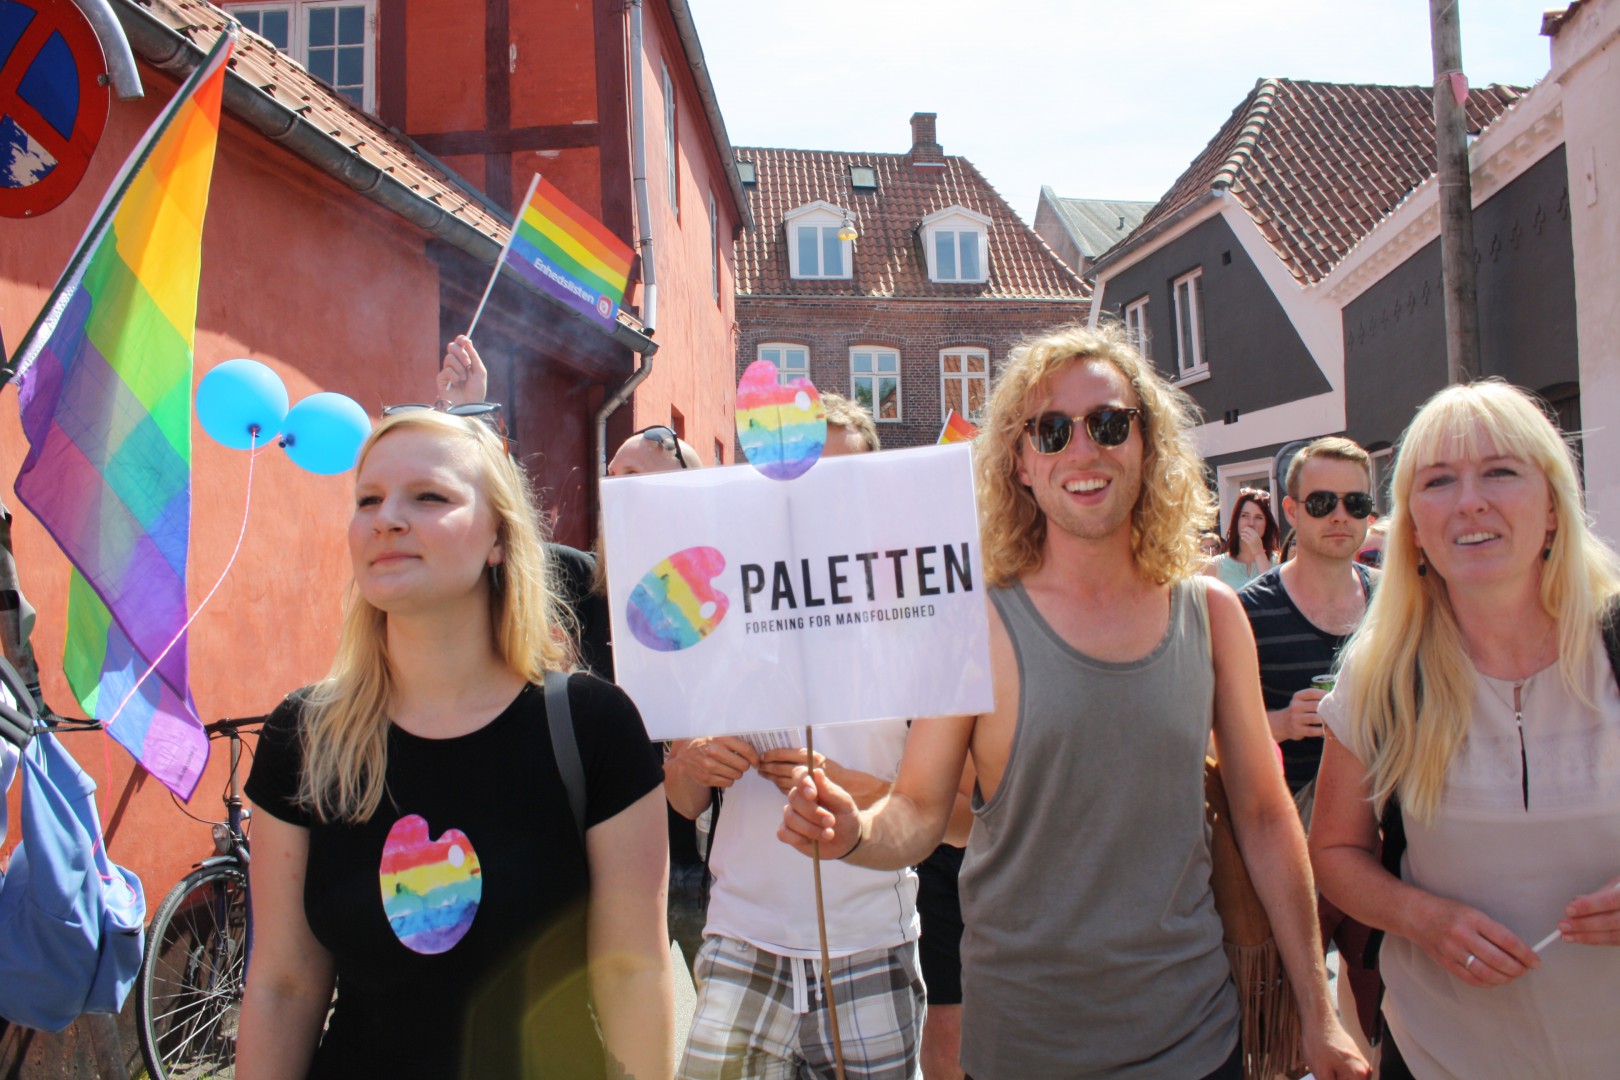 Paletten – en LGBTIQ-forening i Horsens, der udspringer af stifterens egne oplevelser // Foto: Emilie Schlie 